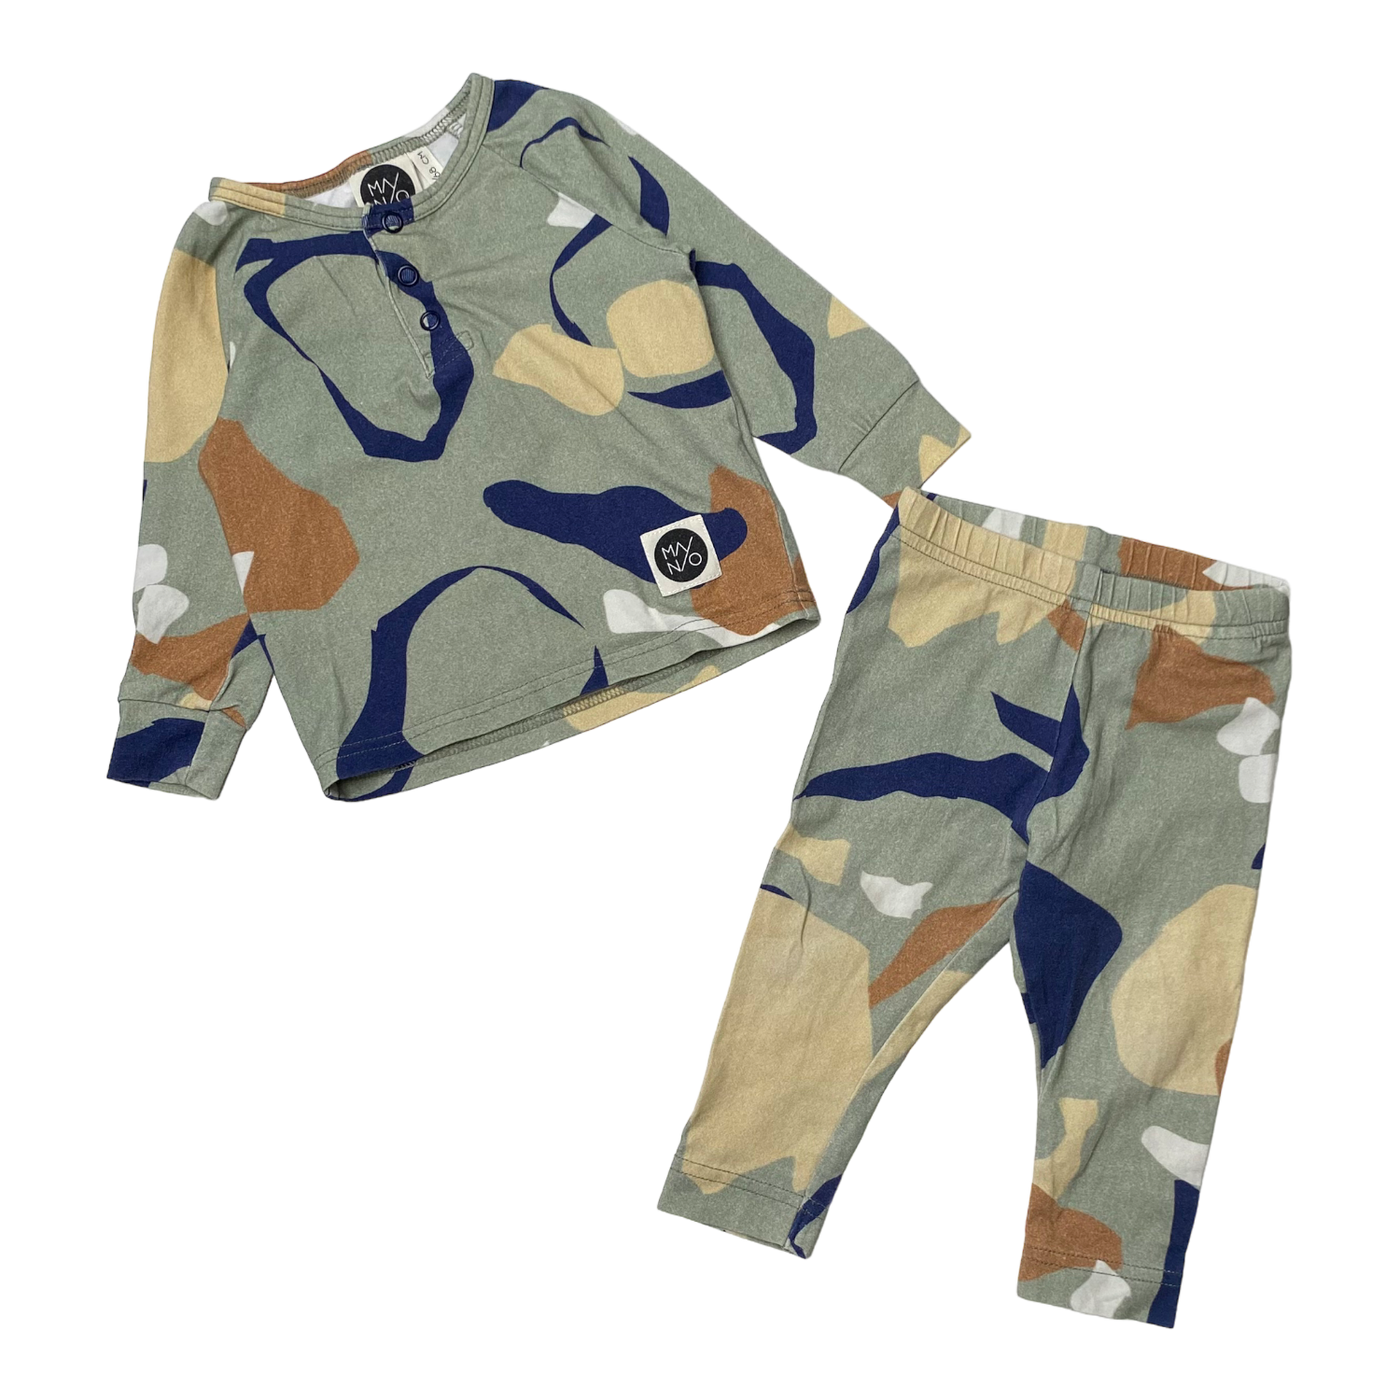 Mainio tricot set, graphic | 62/68cm